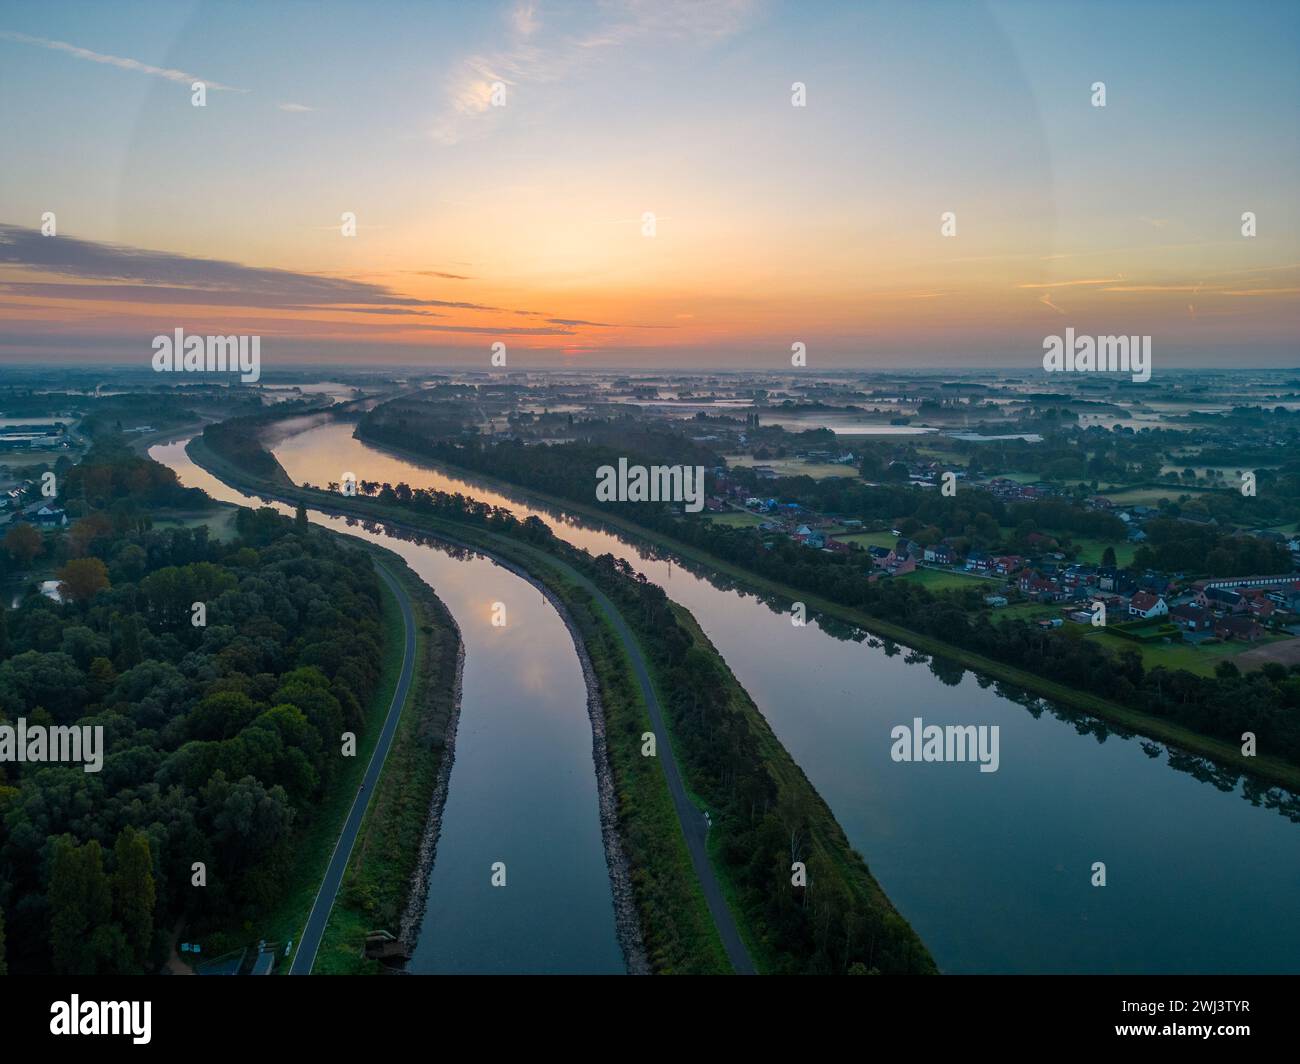 Abenddämmerung über dem Fluss: Blick auf einen Wasserweg bei Sonnenuntergang aus der Vogelperspektive Stockfoto